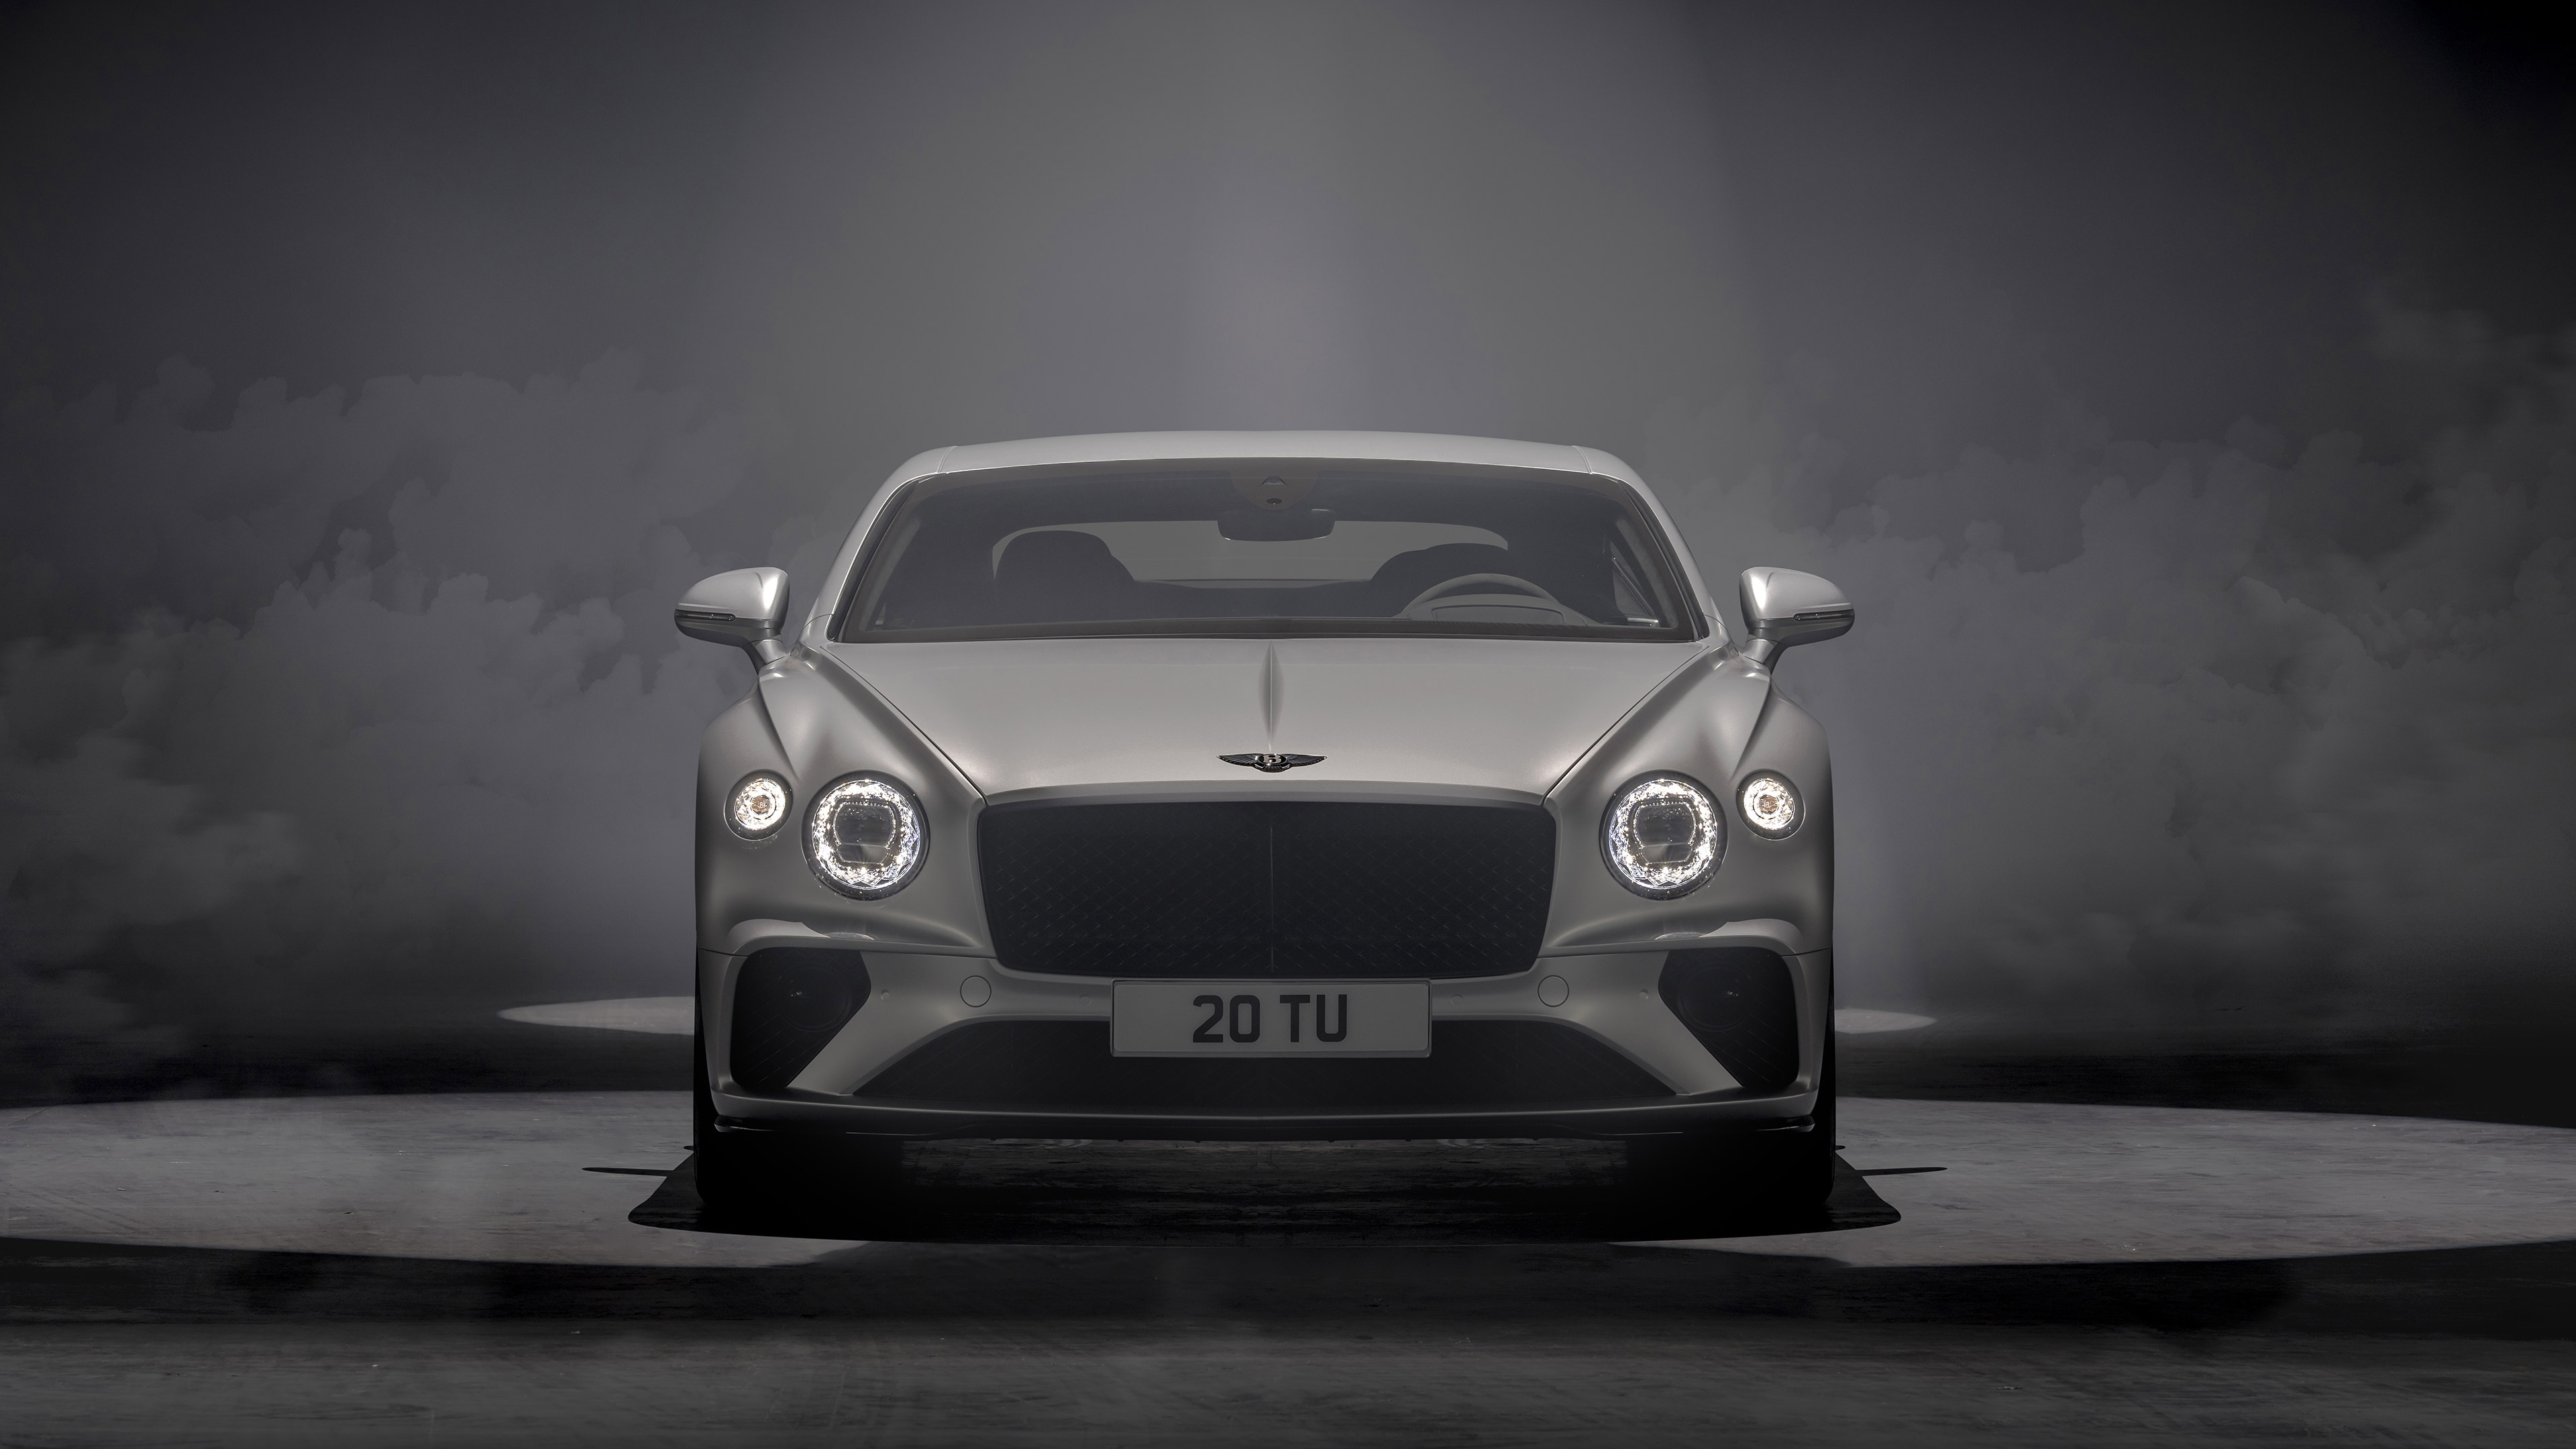 Bentley Continental Gt Speed Wallpapers